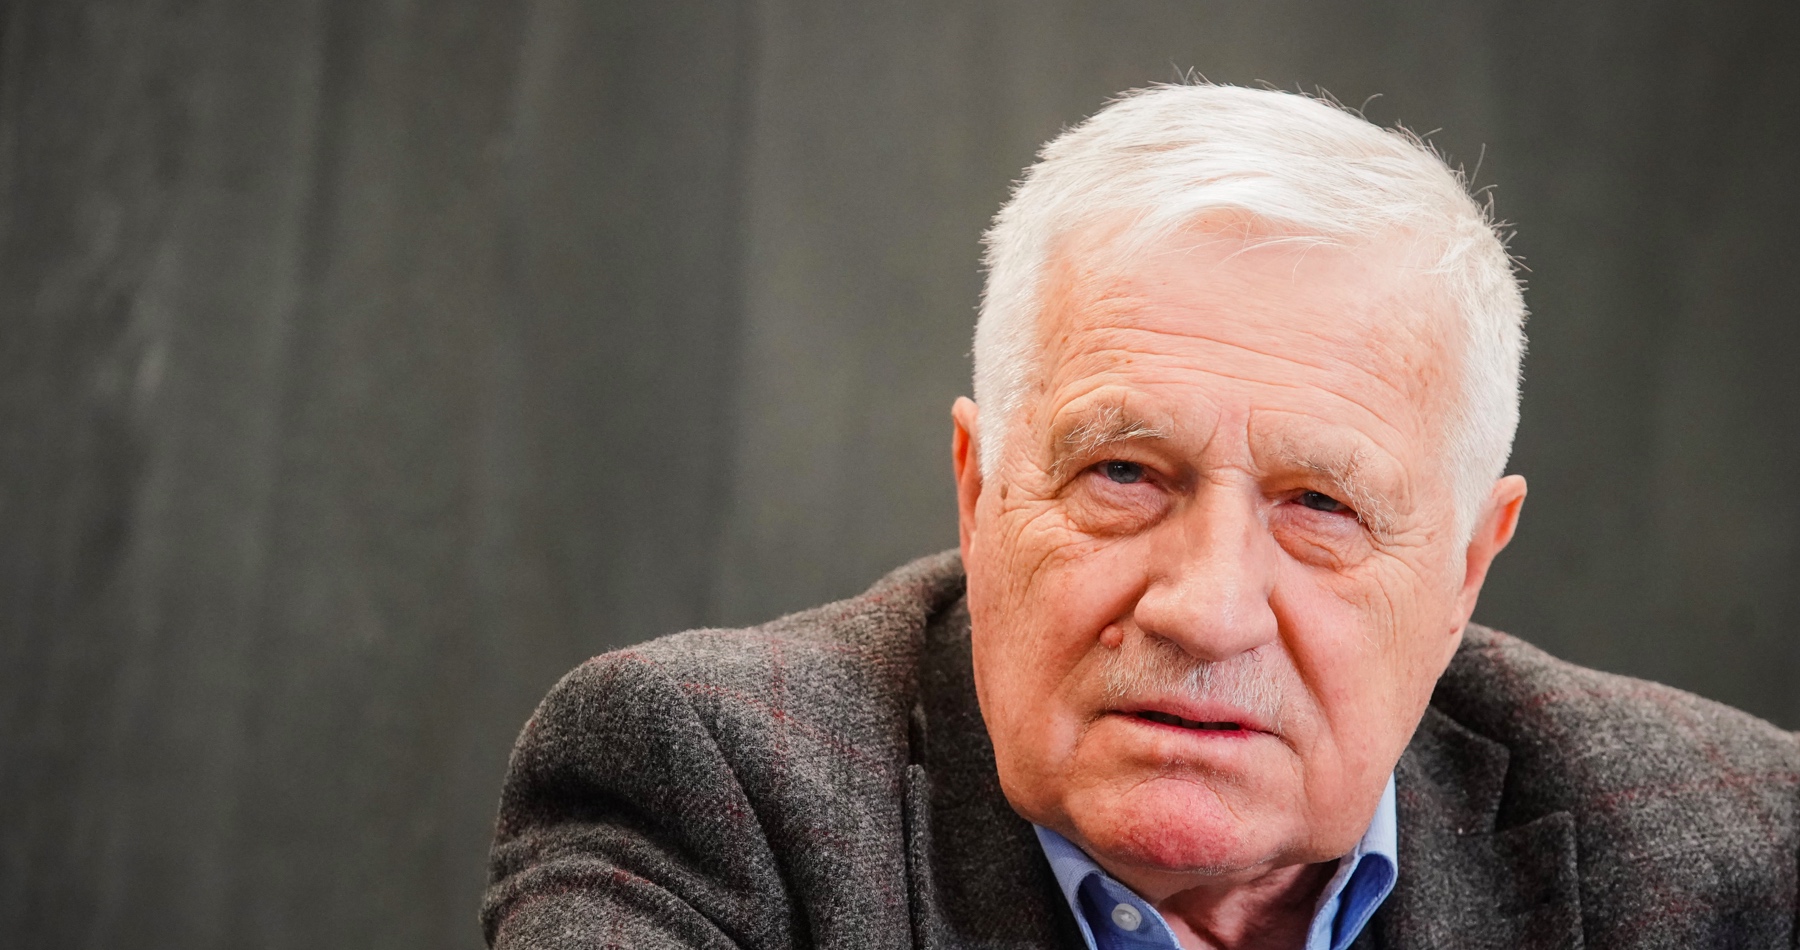 Václav Klaus o verejnej debata ohľadne konfliktu na Ukrajine: „Dnes existující jednosměrná propaganda a podlehnutí takové propagandě jsou cestou do nového poddanství a nesvobody“